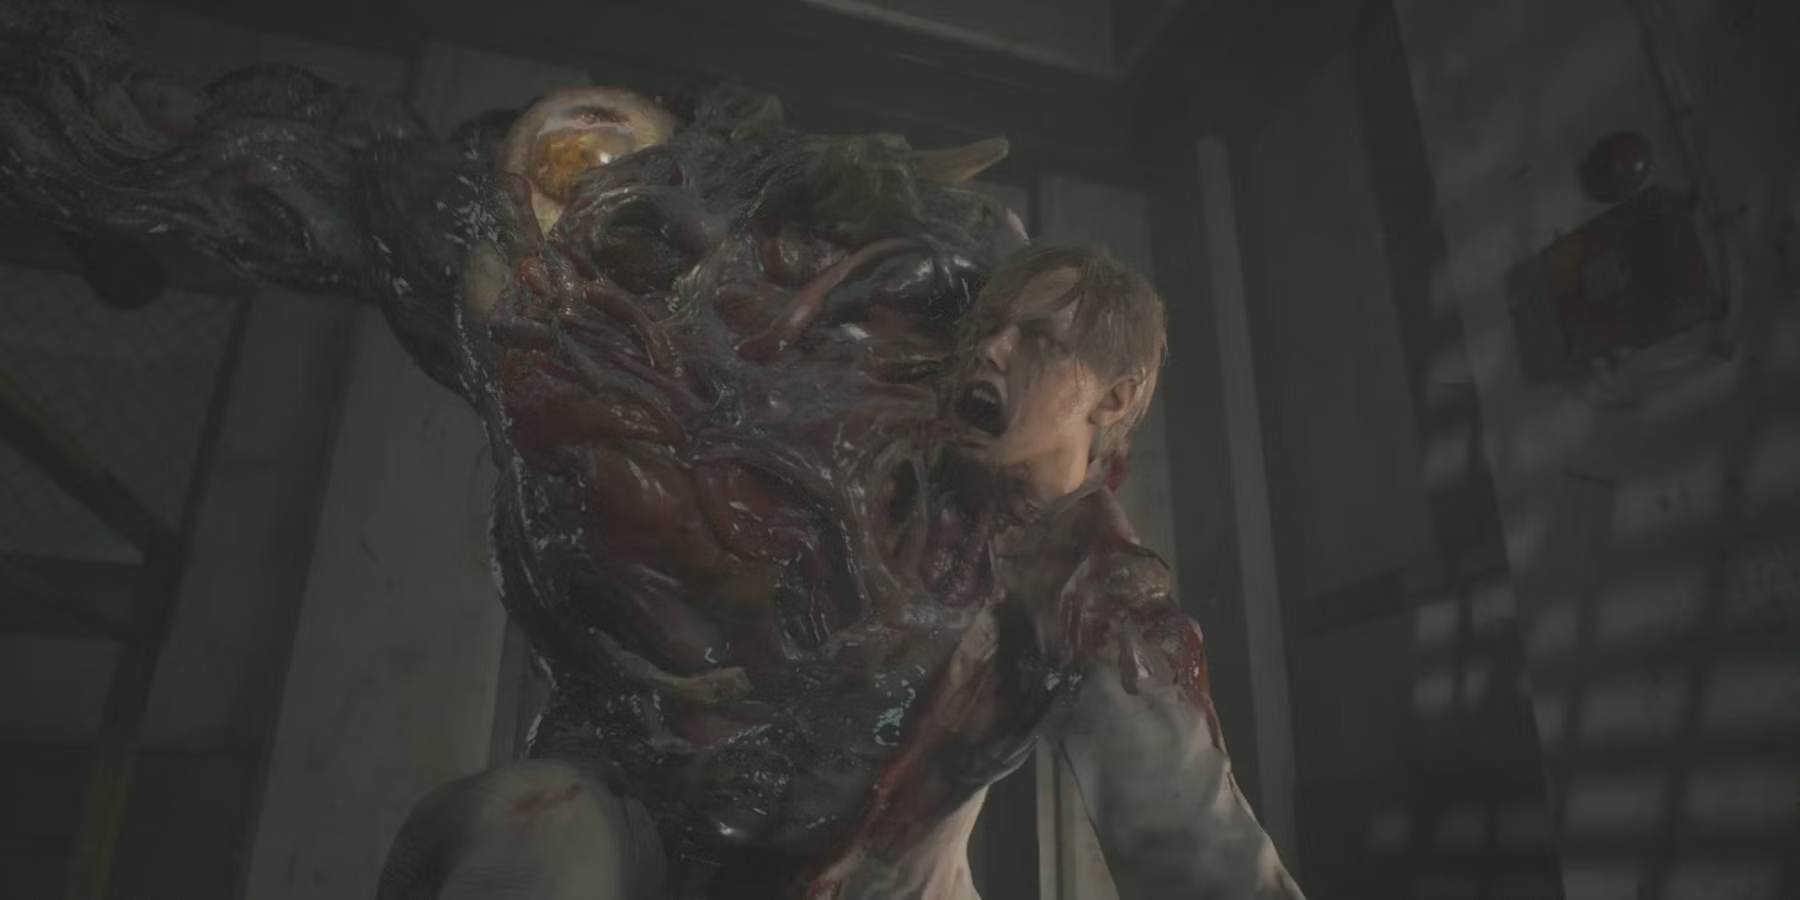 5 năm sau, Resident Evil 2 vẫn là tượng đài của các bản remake